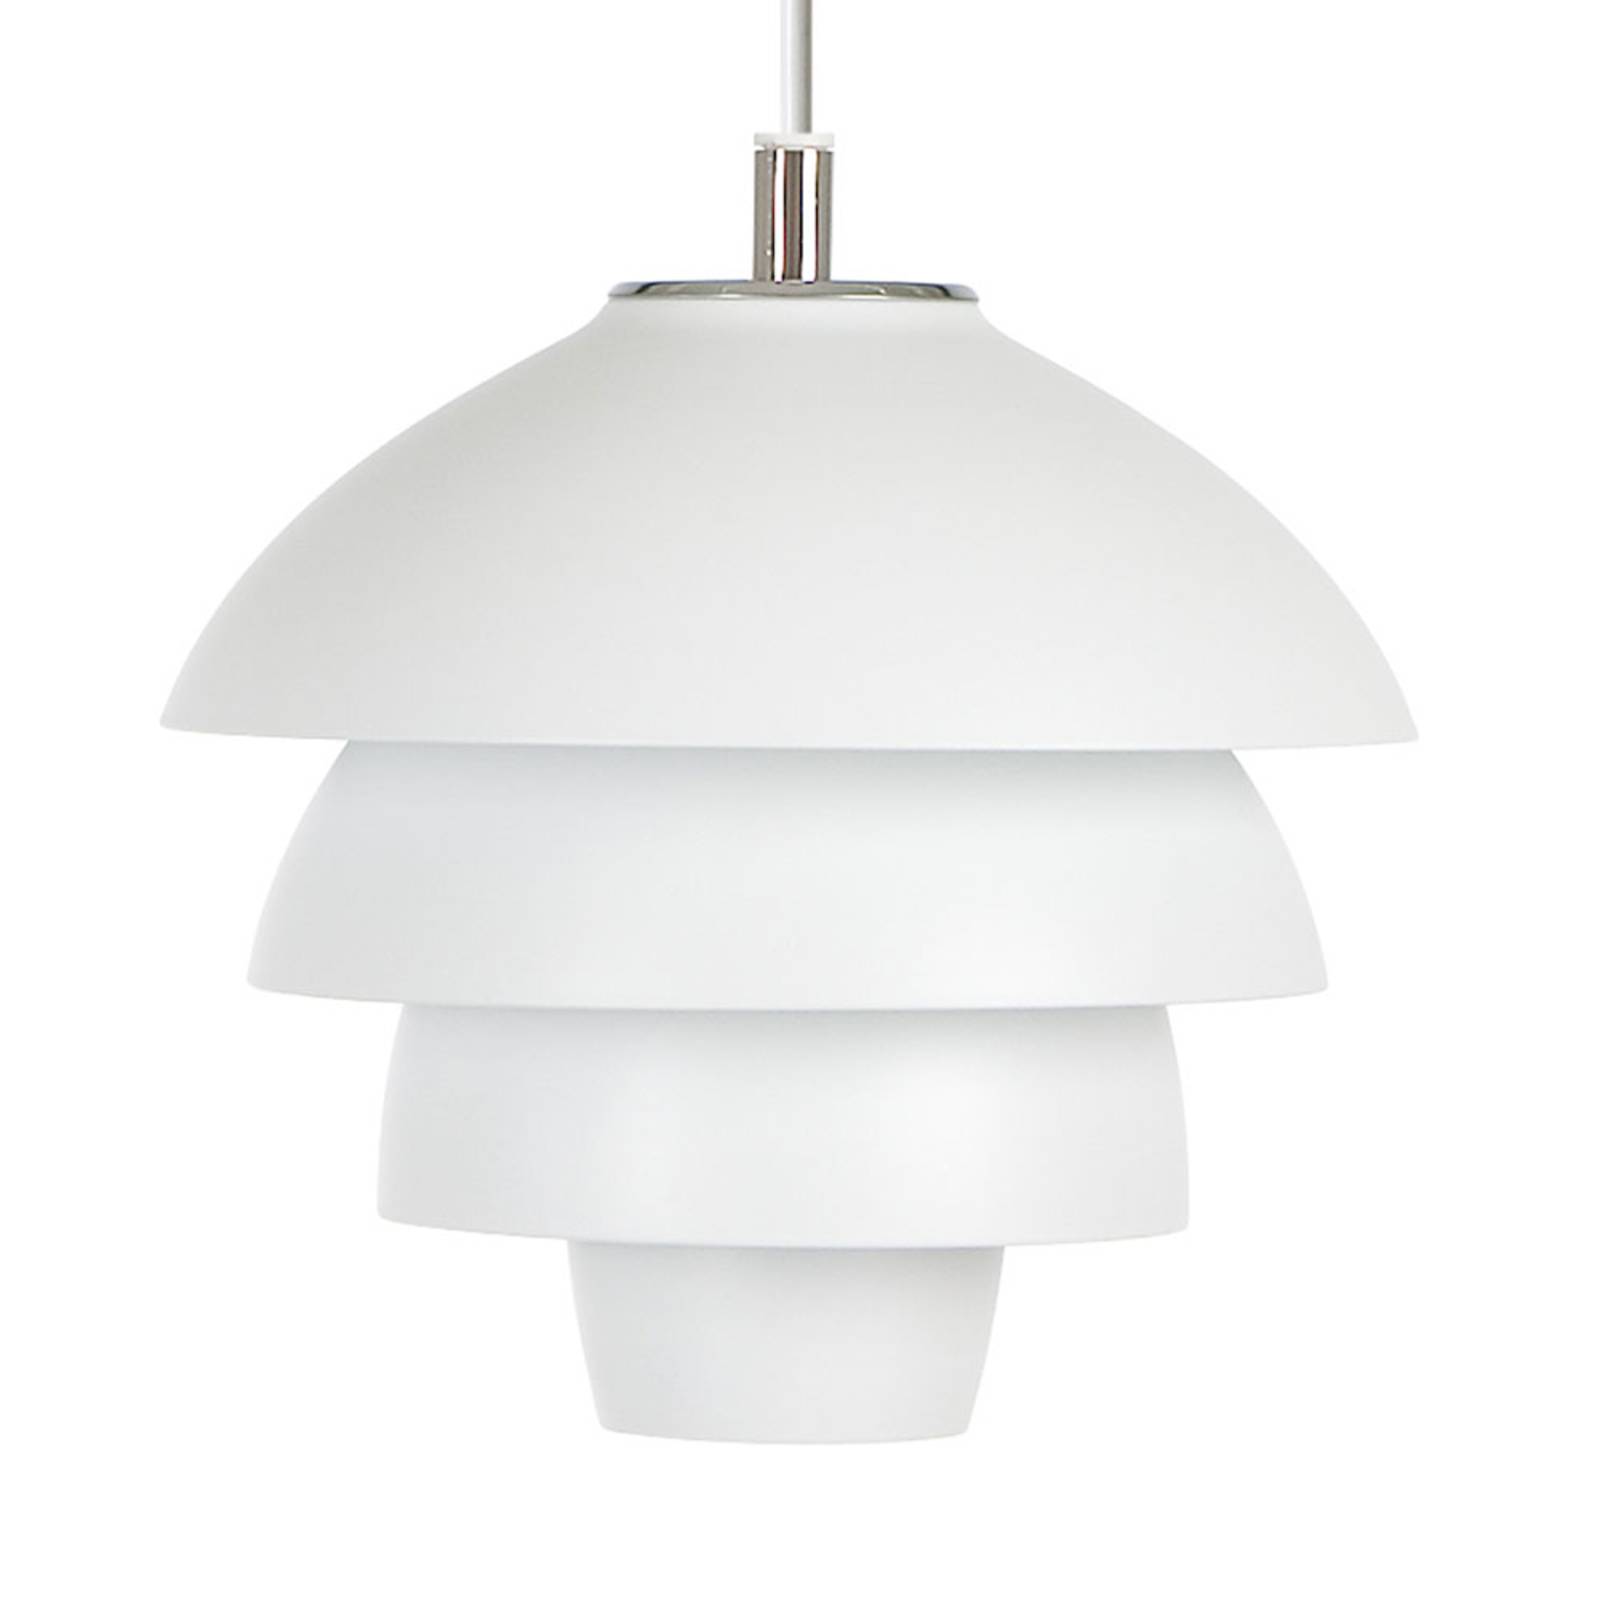 Lampa wisząca Valencia, Ø 18 cm, biała, z wtyczką